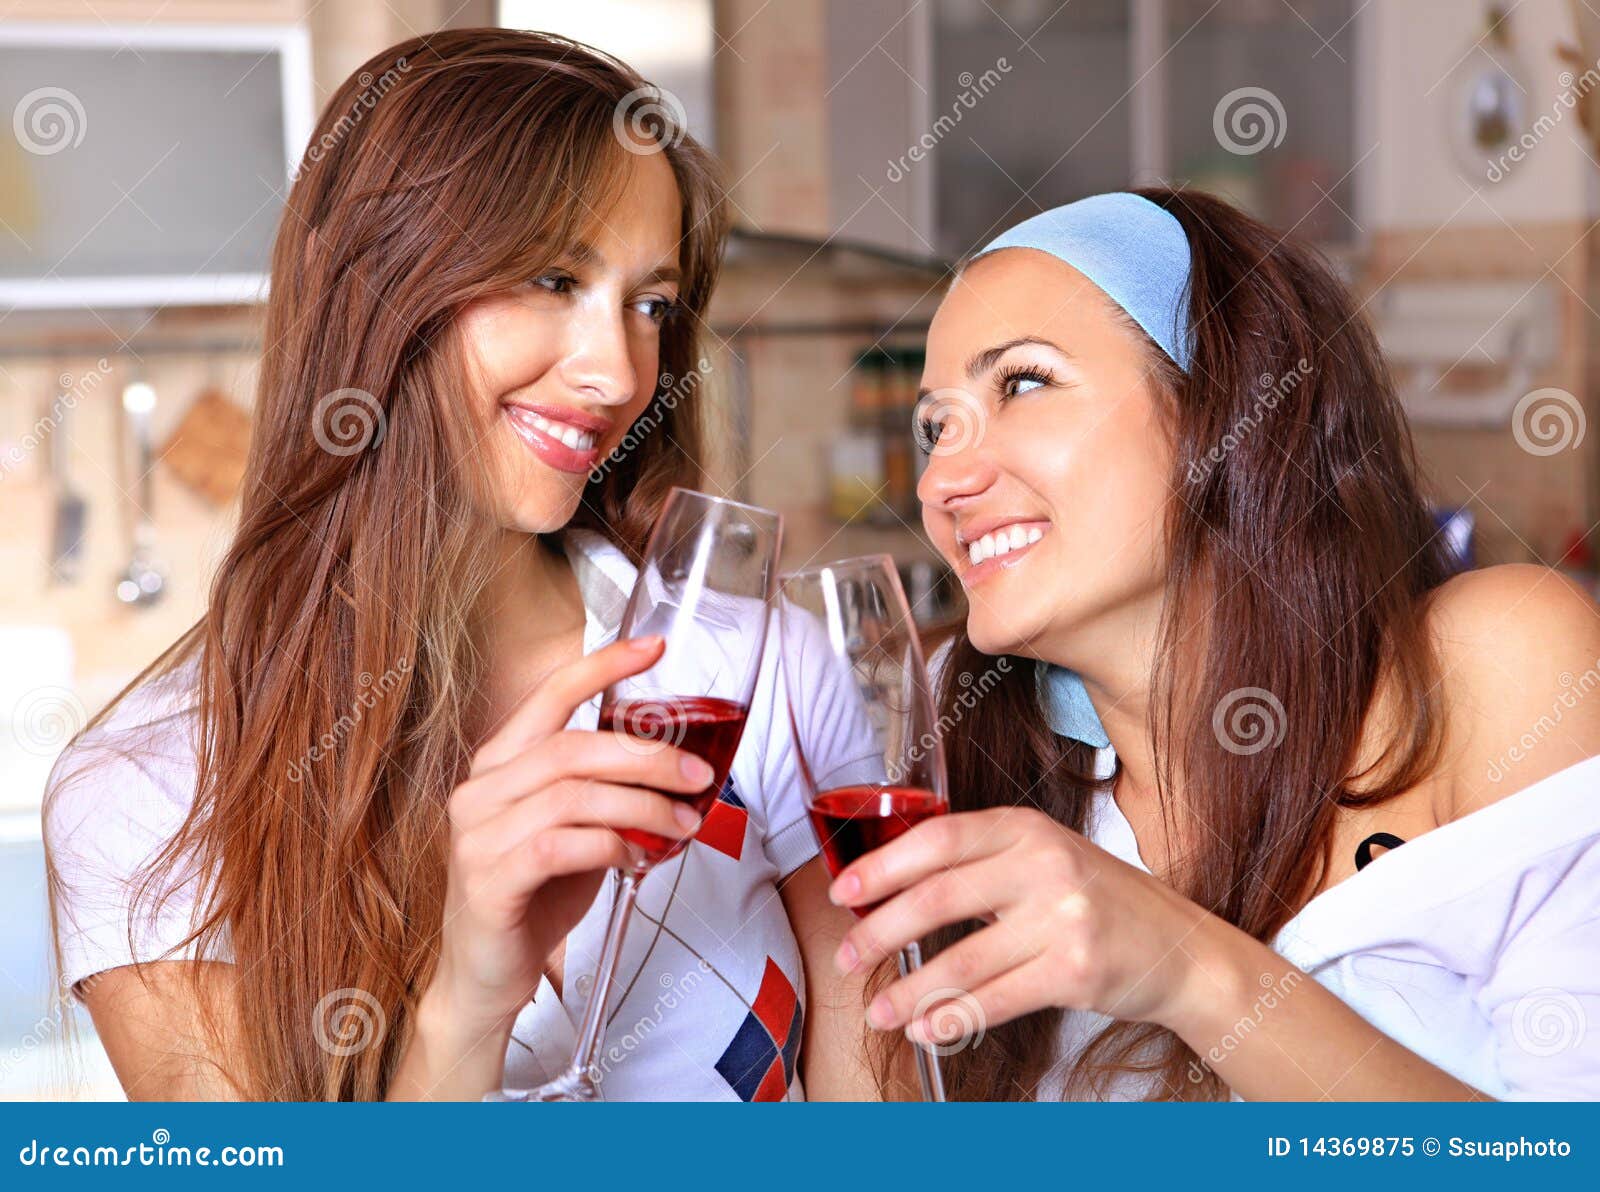 Пьет сестру друга. Две подружки с вином. Две подруги с вином. Подружки пьют вино. Две девушки с вином.